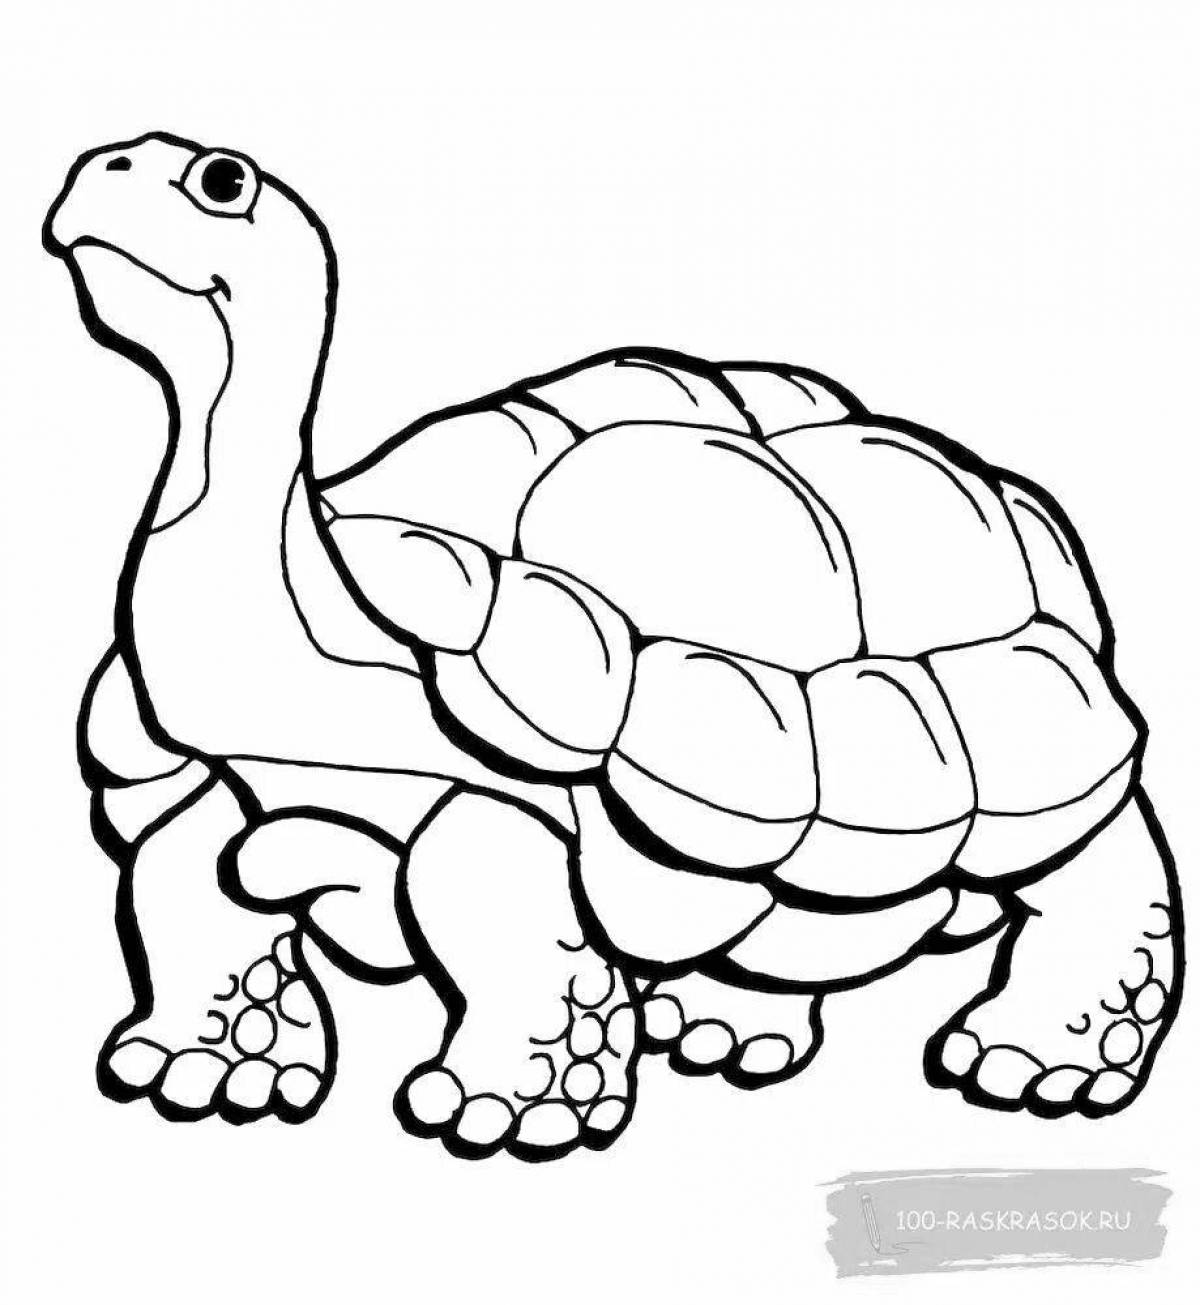 Раскраска черепаха с цветными брызгами для детей